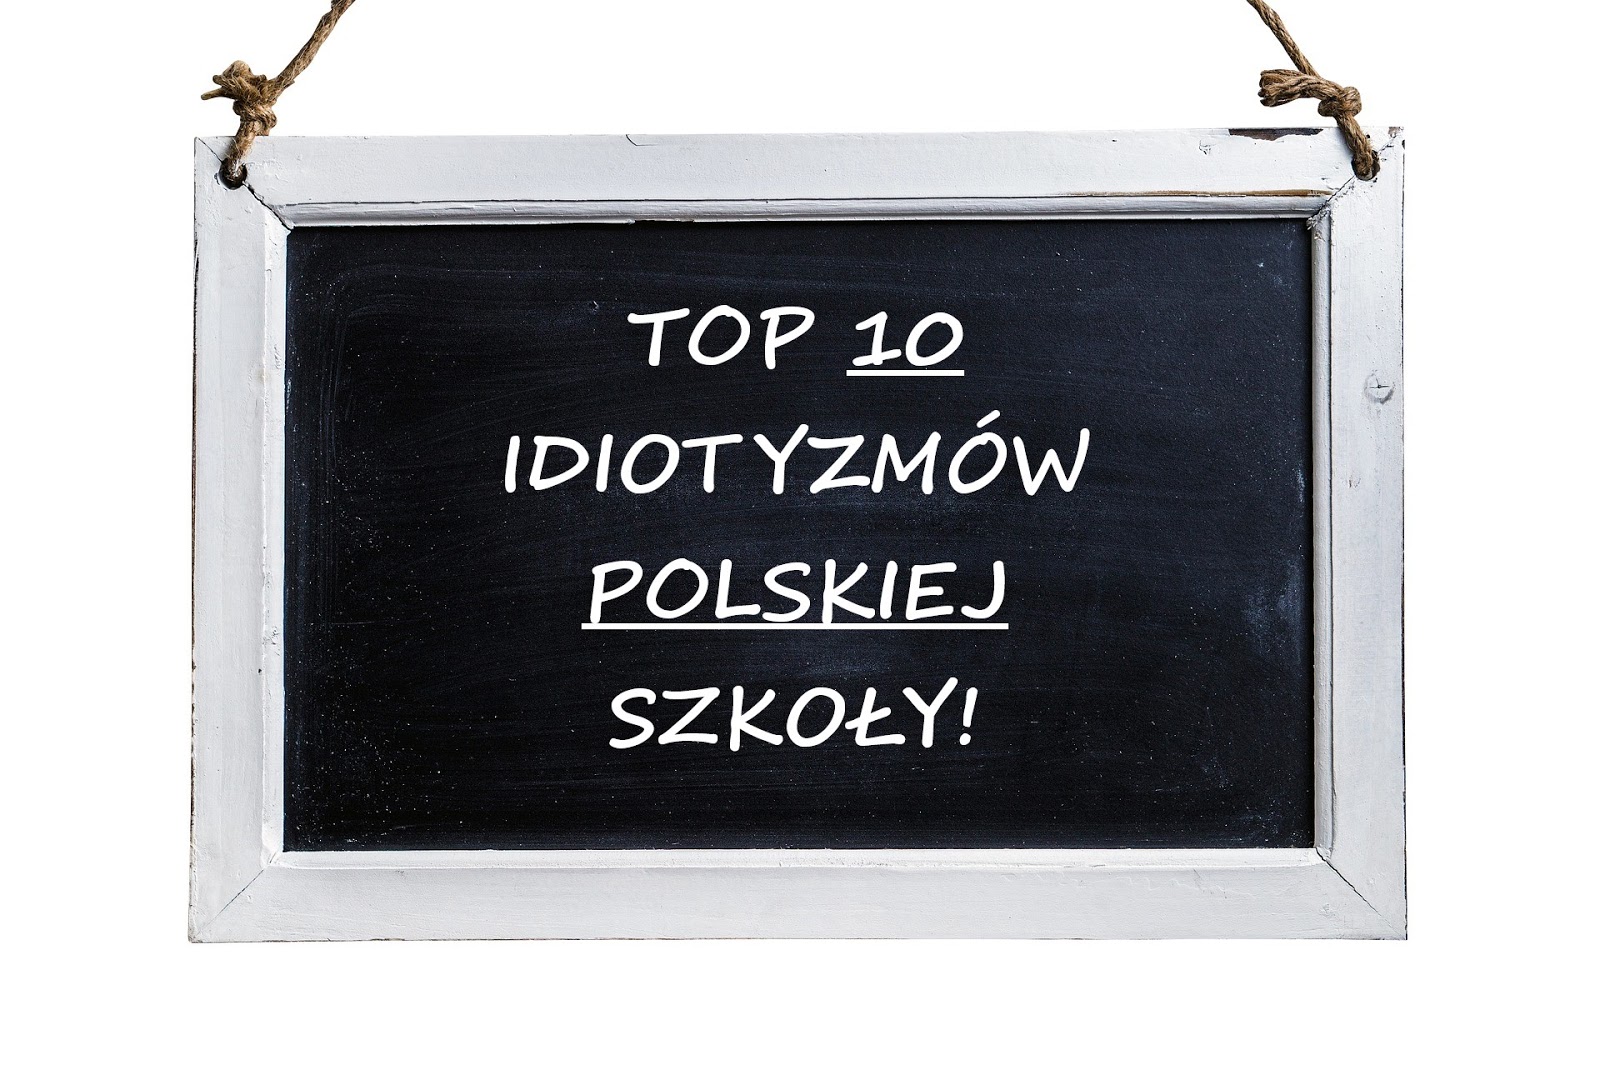 TOP 10 IDIOTYZMOW POLSKIEJ SZKOŁY